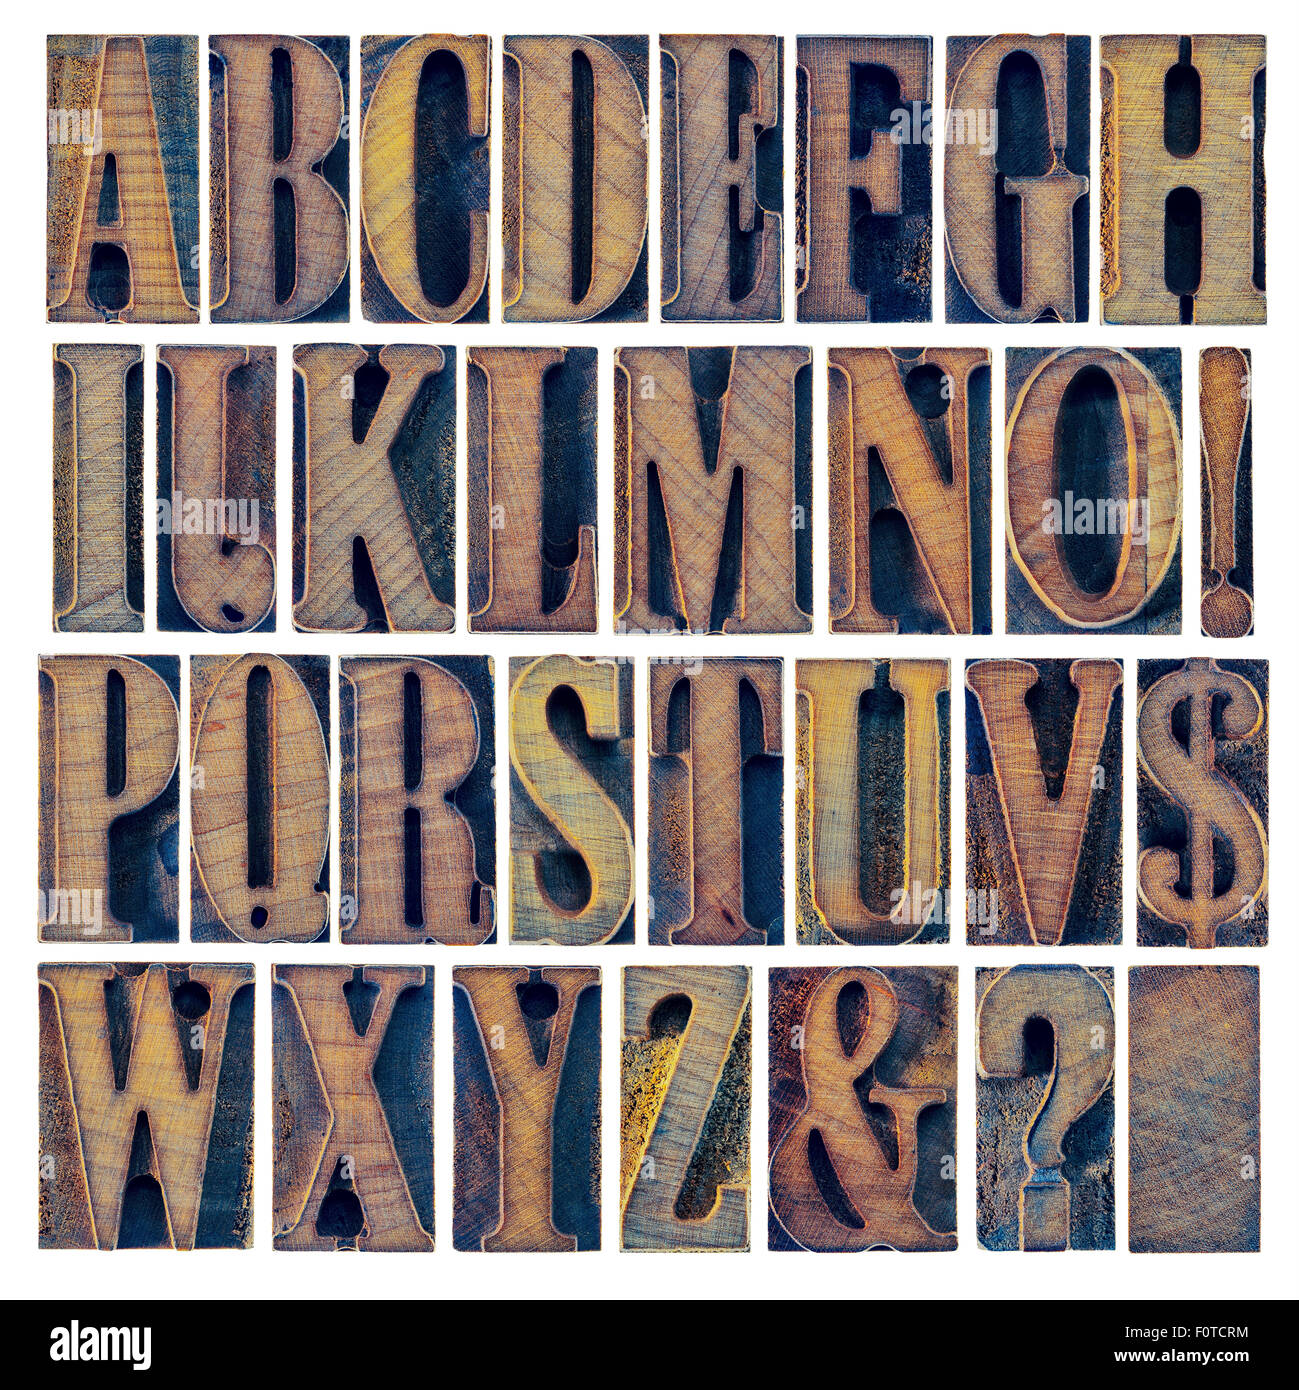 L'alphabet en typographie moderne type de blocs d'impression, un collage de 26 lettres isolées, le point d'interrogation, d'exclamation, am Banque D'Images